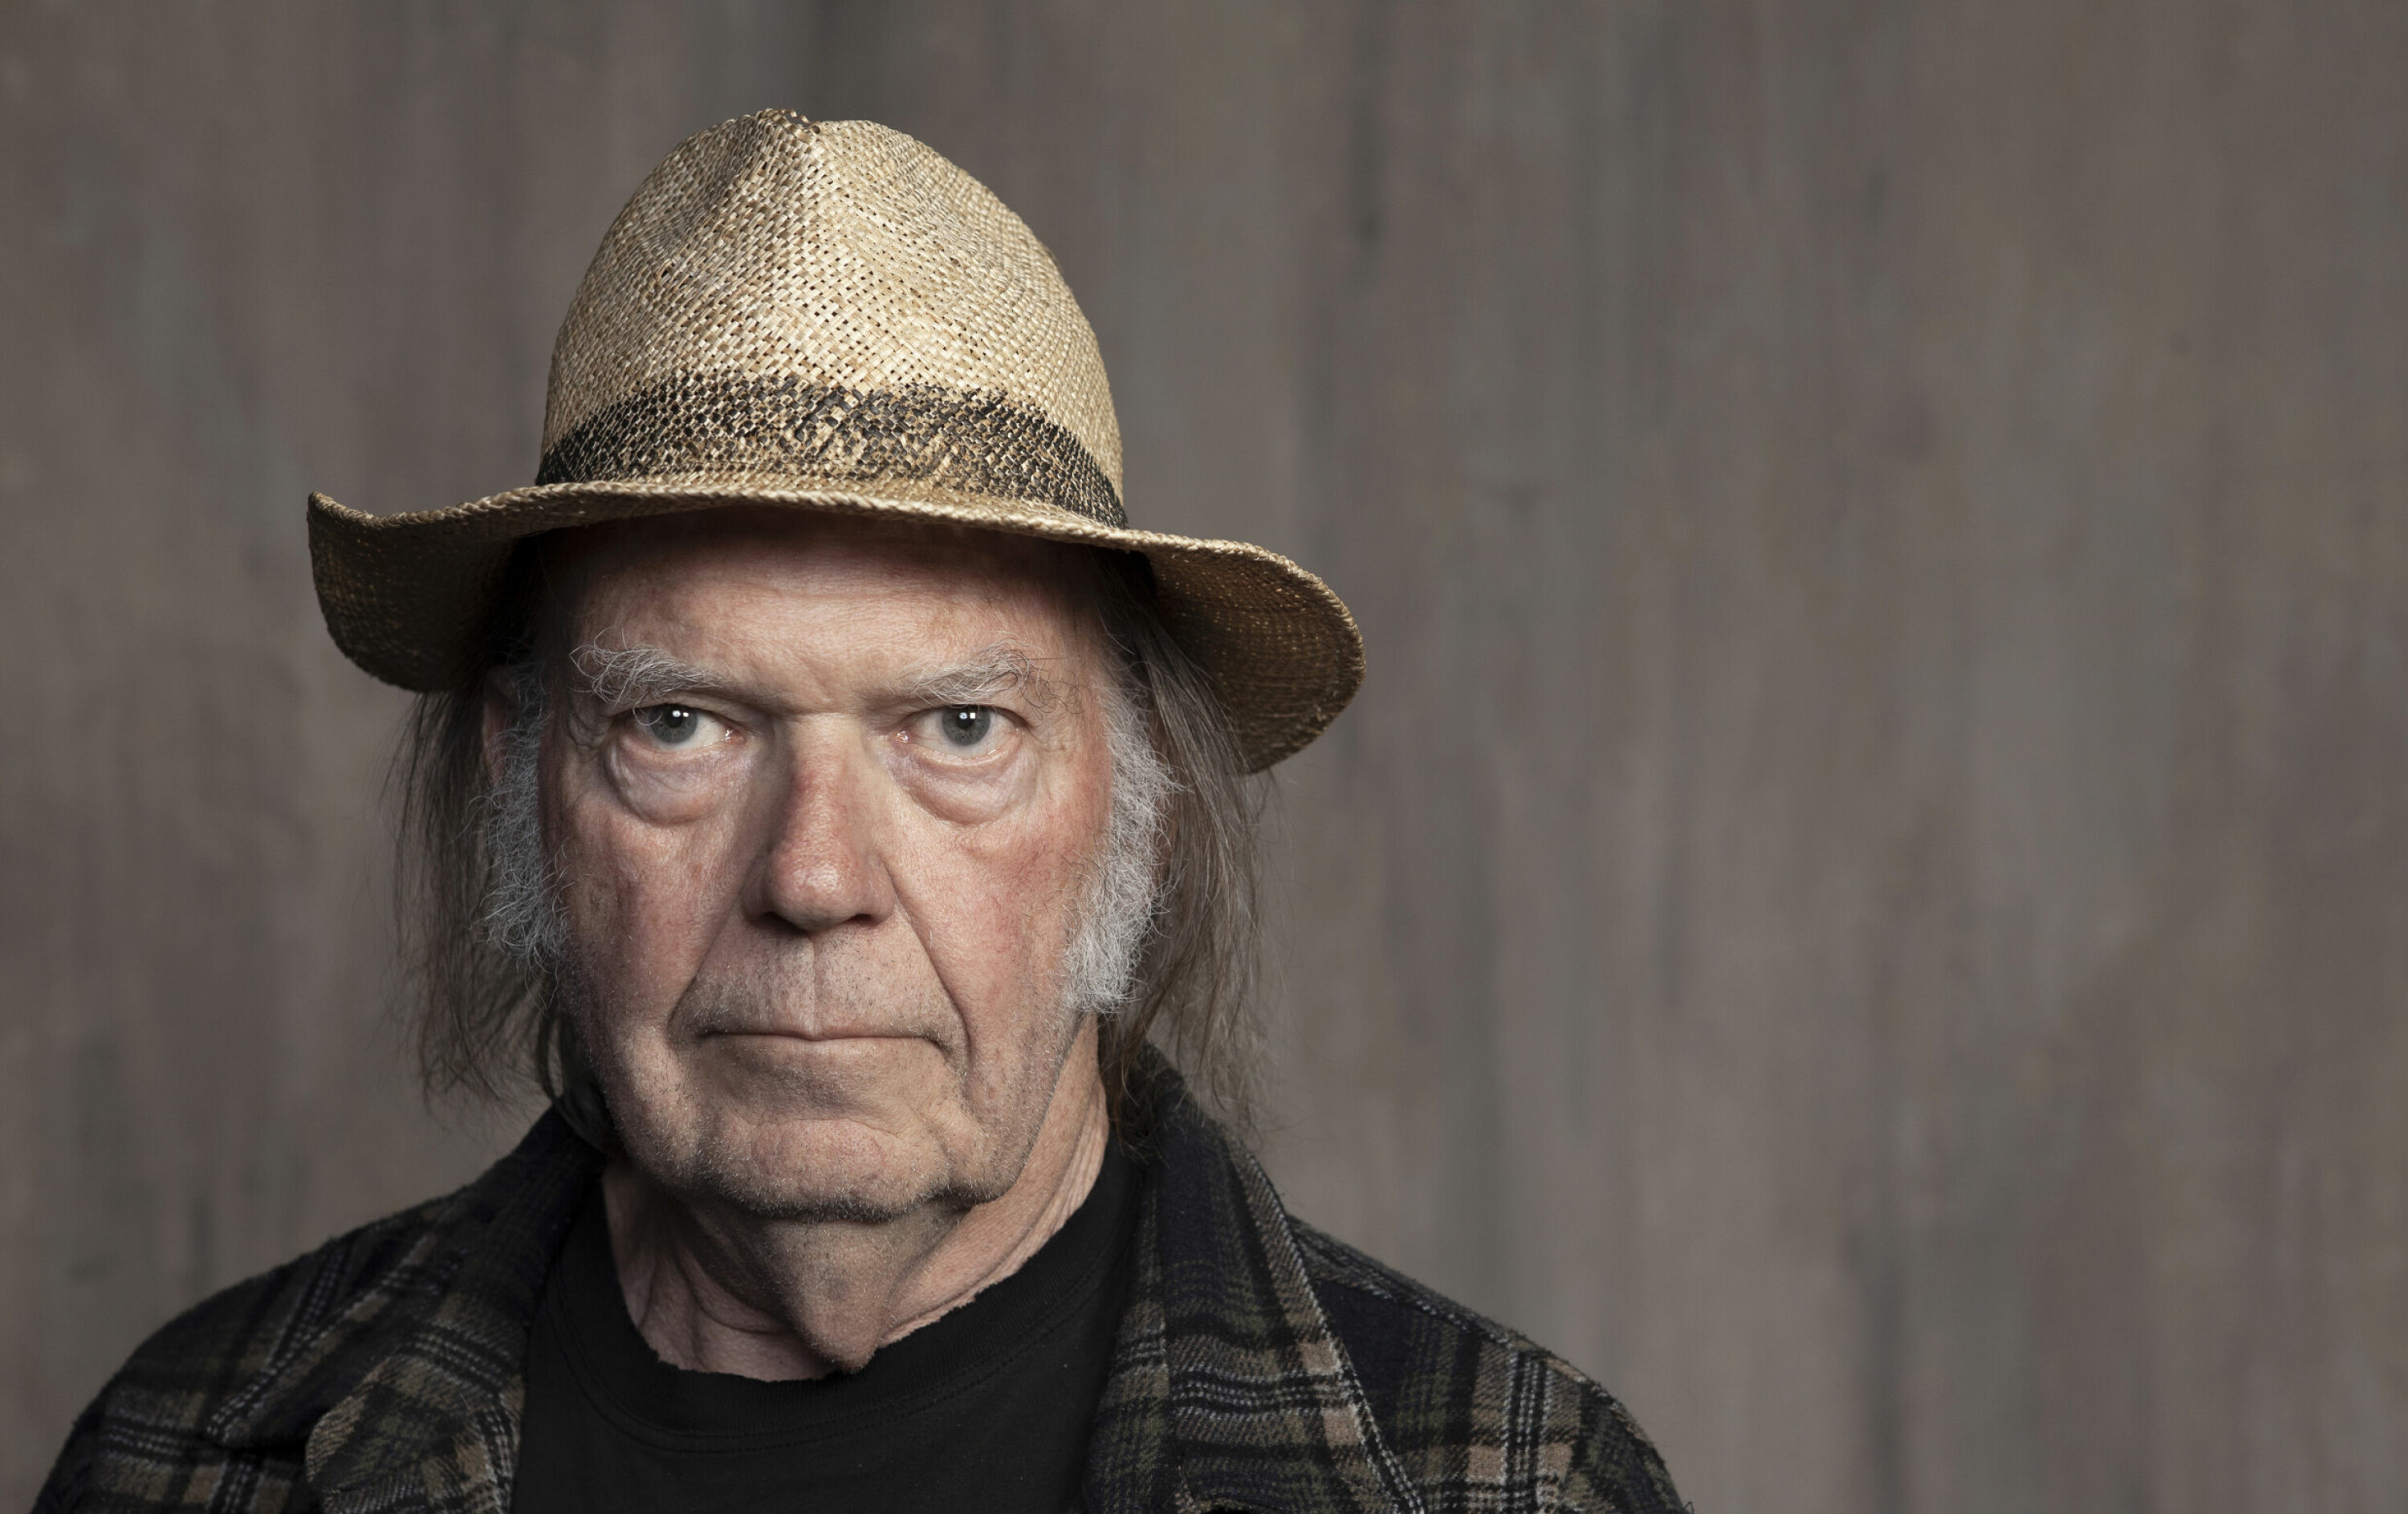 Keep on rockin' in the free world, og andre Neil Young-låtar forsvinn frå Spotify etter at rockestjerna Neil Young protesterte mot uvitskapeleg desinformasjon på straumetenesta.